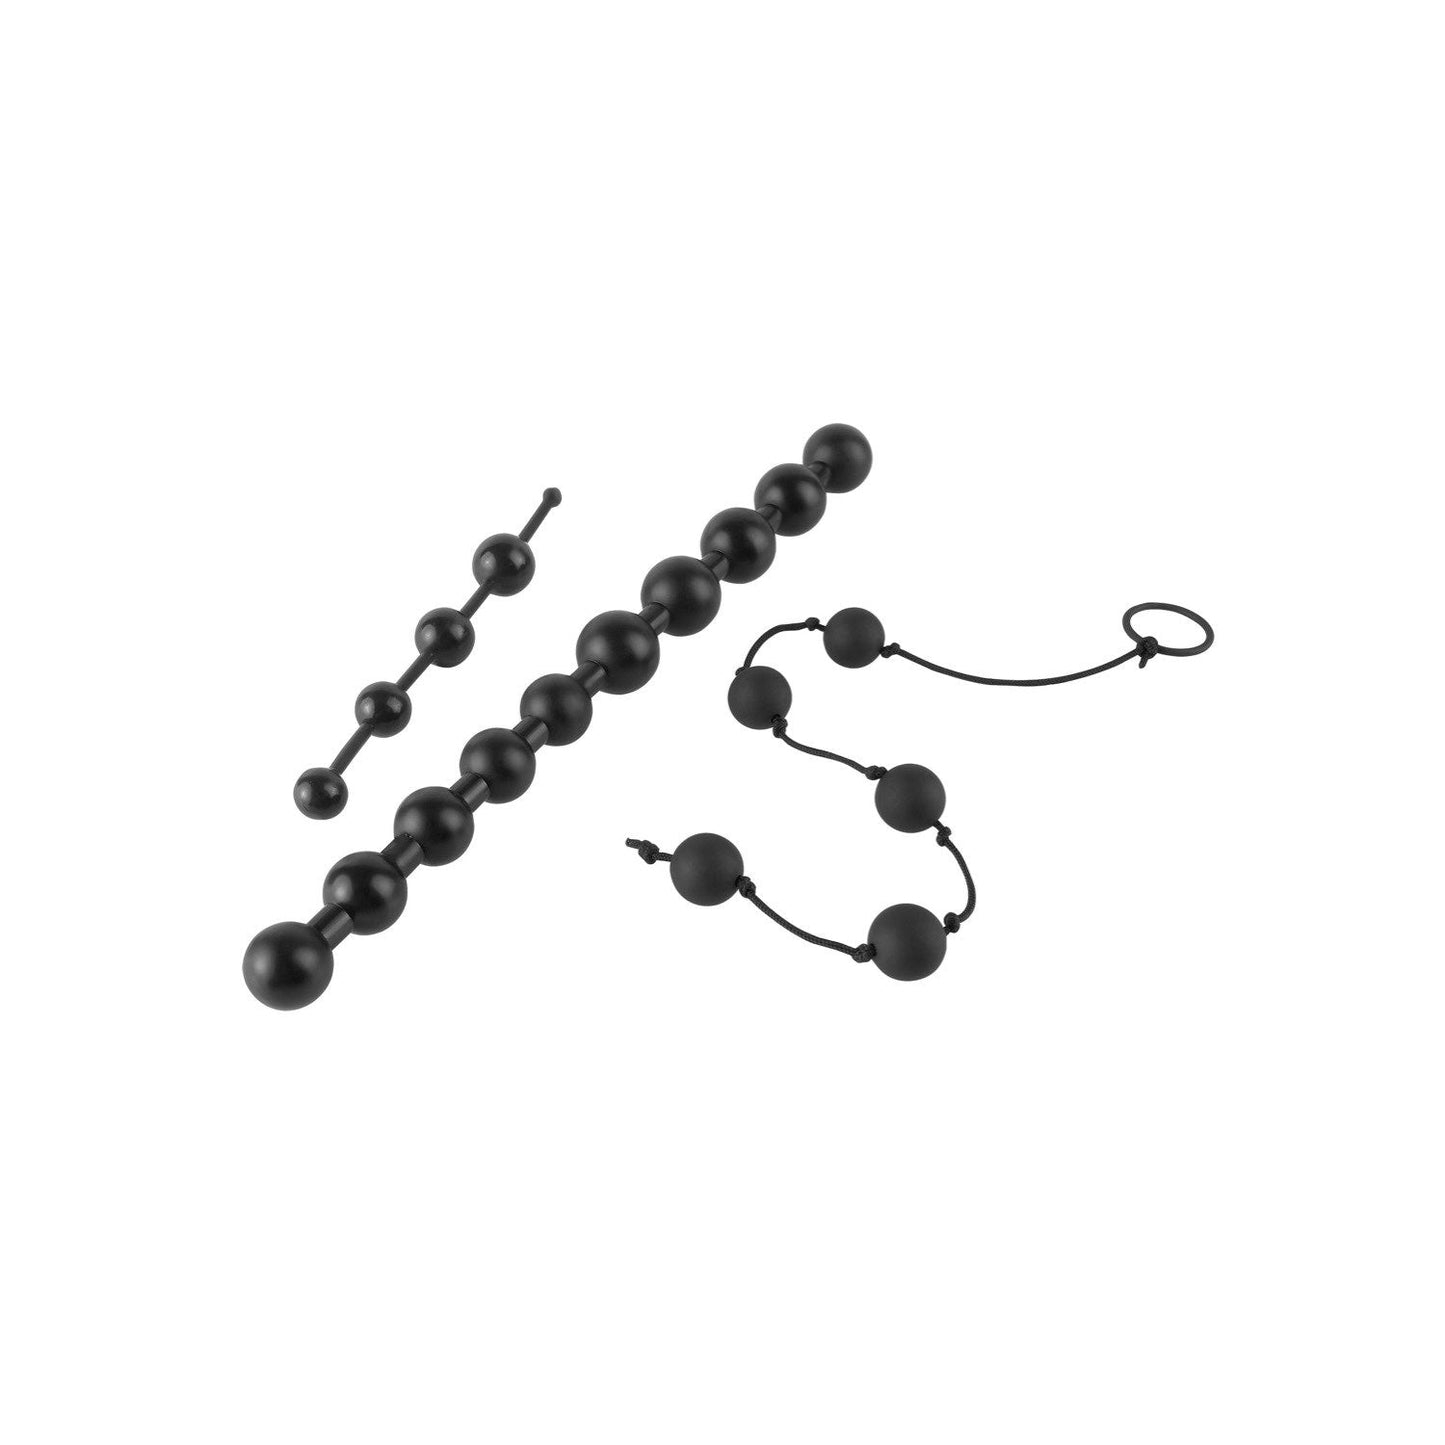 Beginner's Bead Kit - Black Anal Beads - Set of 3 Cords